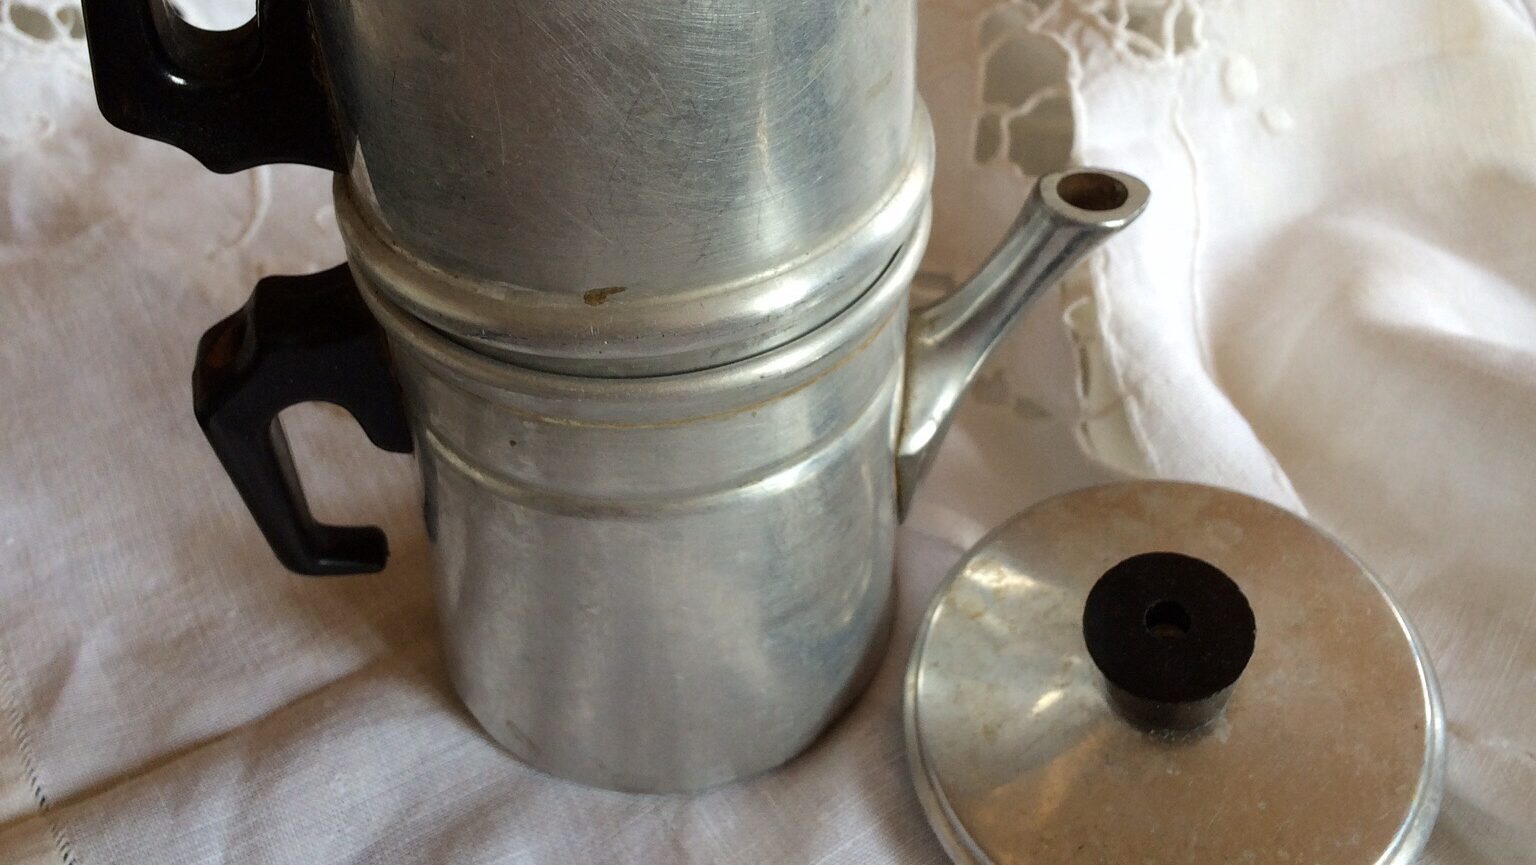 Ilsa Napoletana Coffee Maker, 12 Cup - Fante's Kitchen Shop - Since 1906